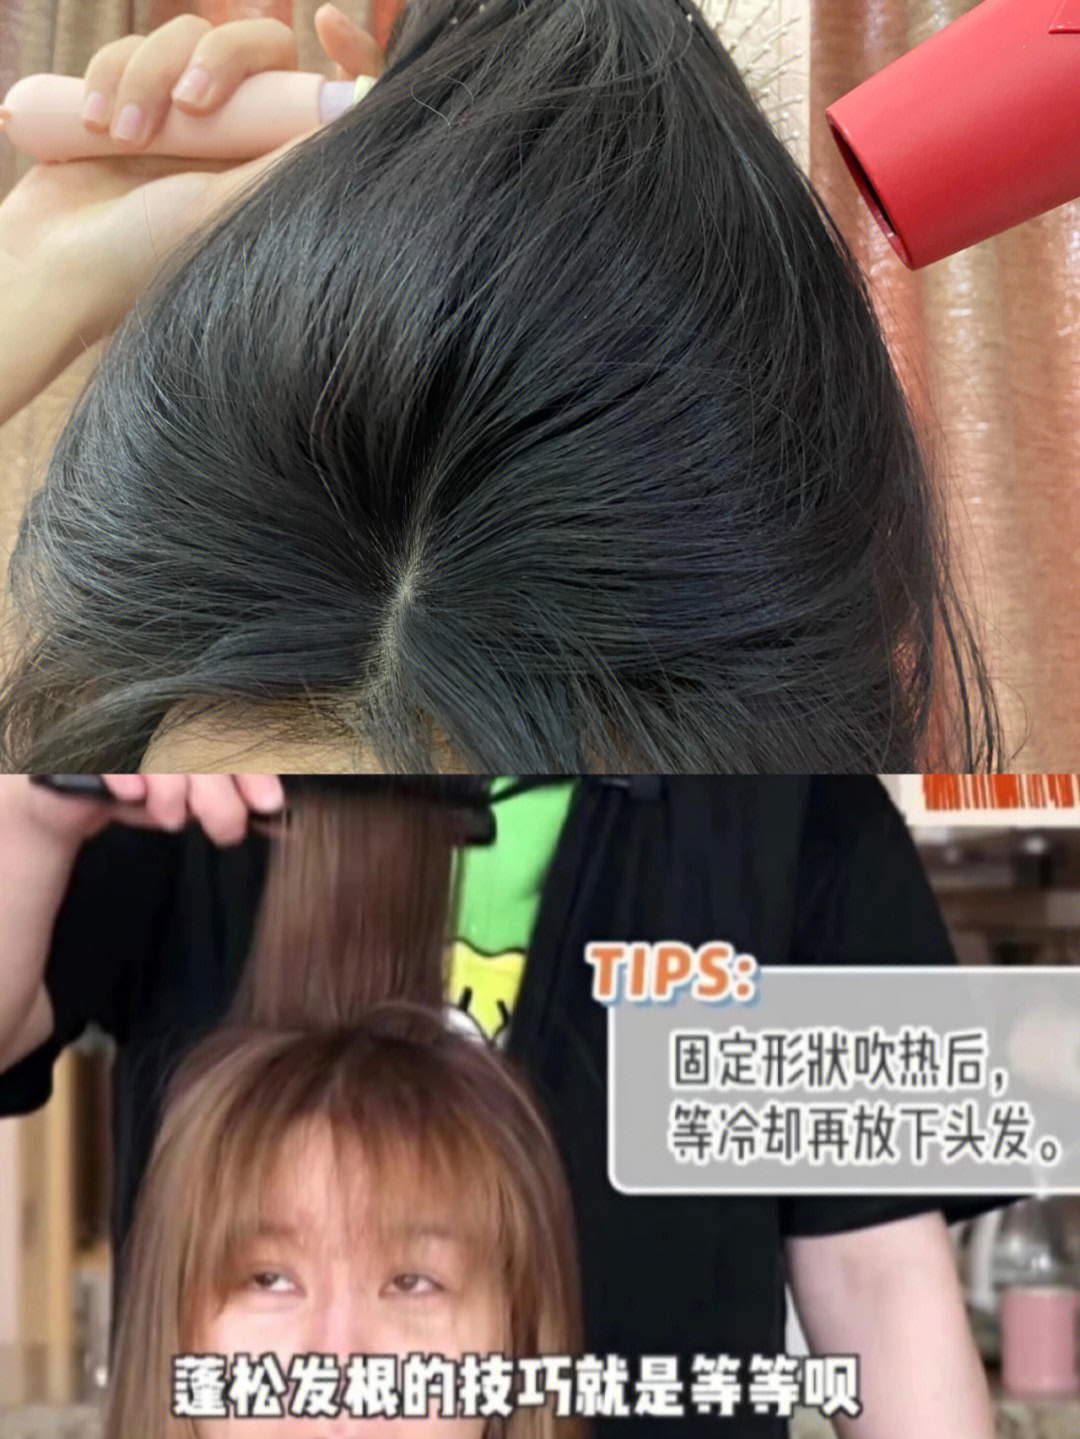 前段时间刷到徐老师的视频,跟着学了一下她吹头发的方法,真的感觉发现